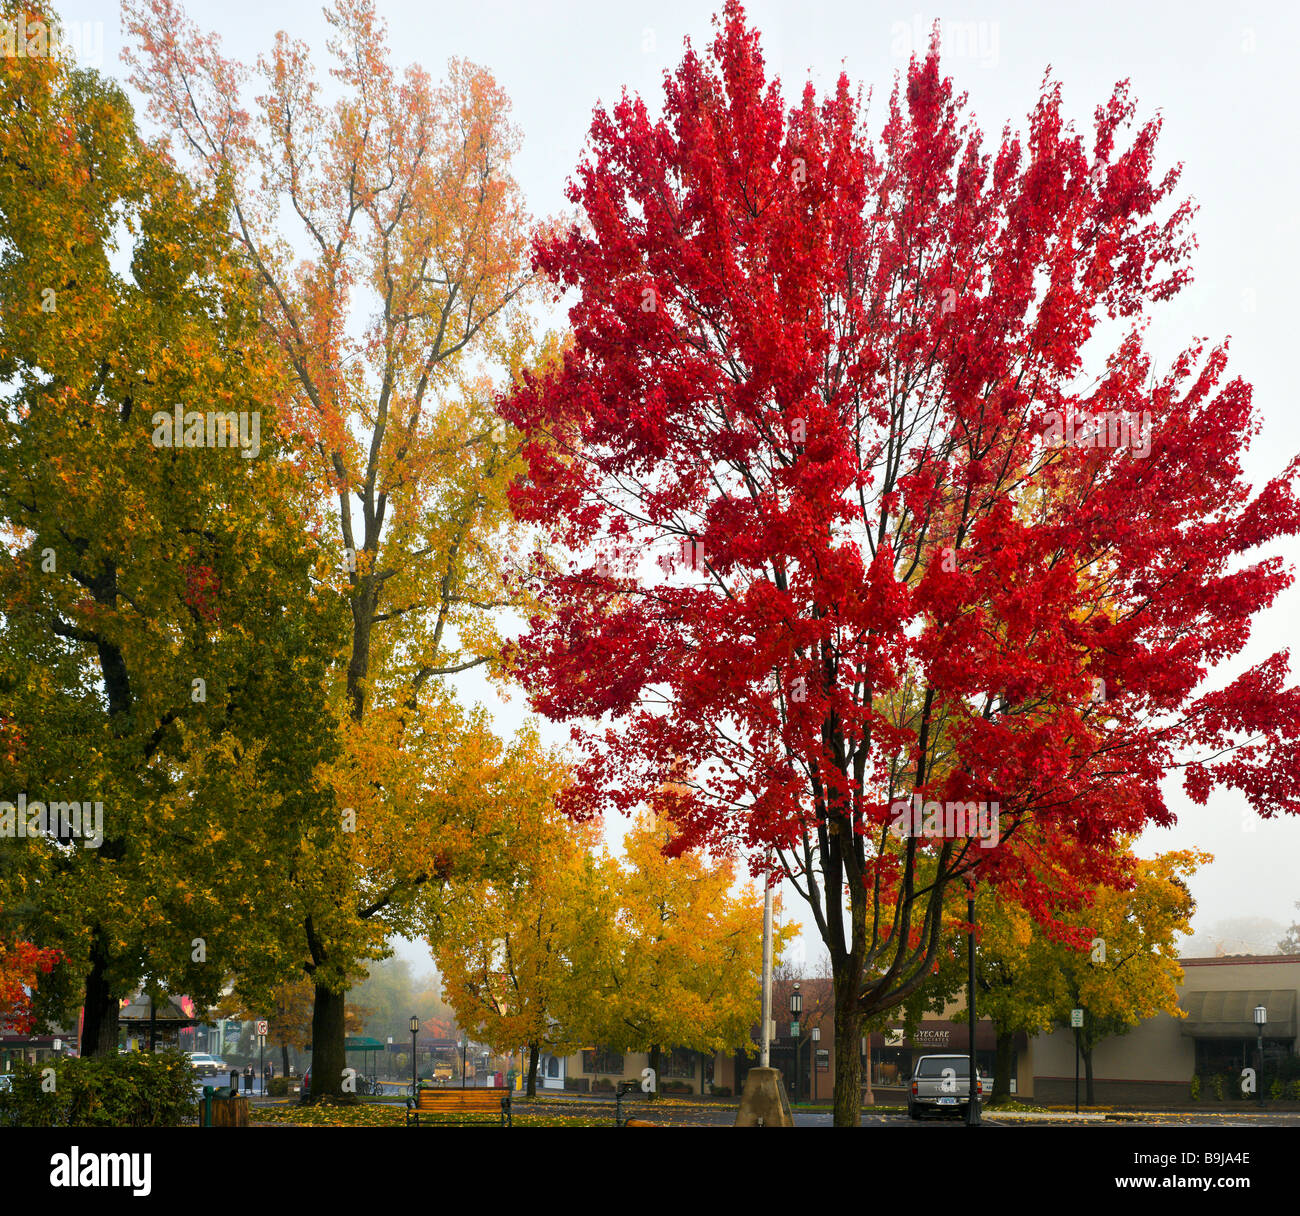 Colores de otoño en el centro histórico de la ciudad, Ashland, Southern Oregon, Costa oeste, EE.UU. Foto de stock